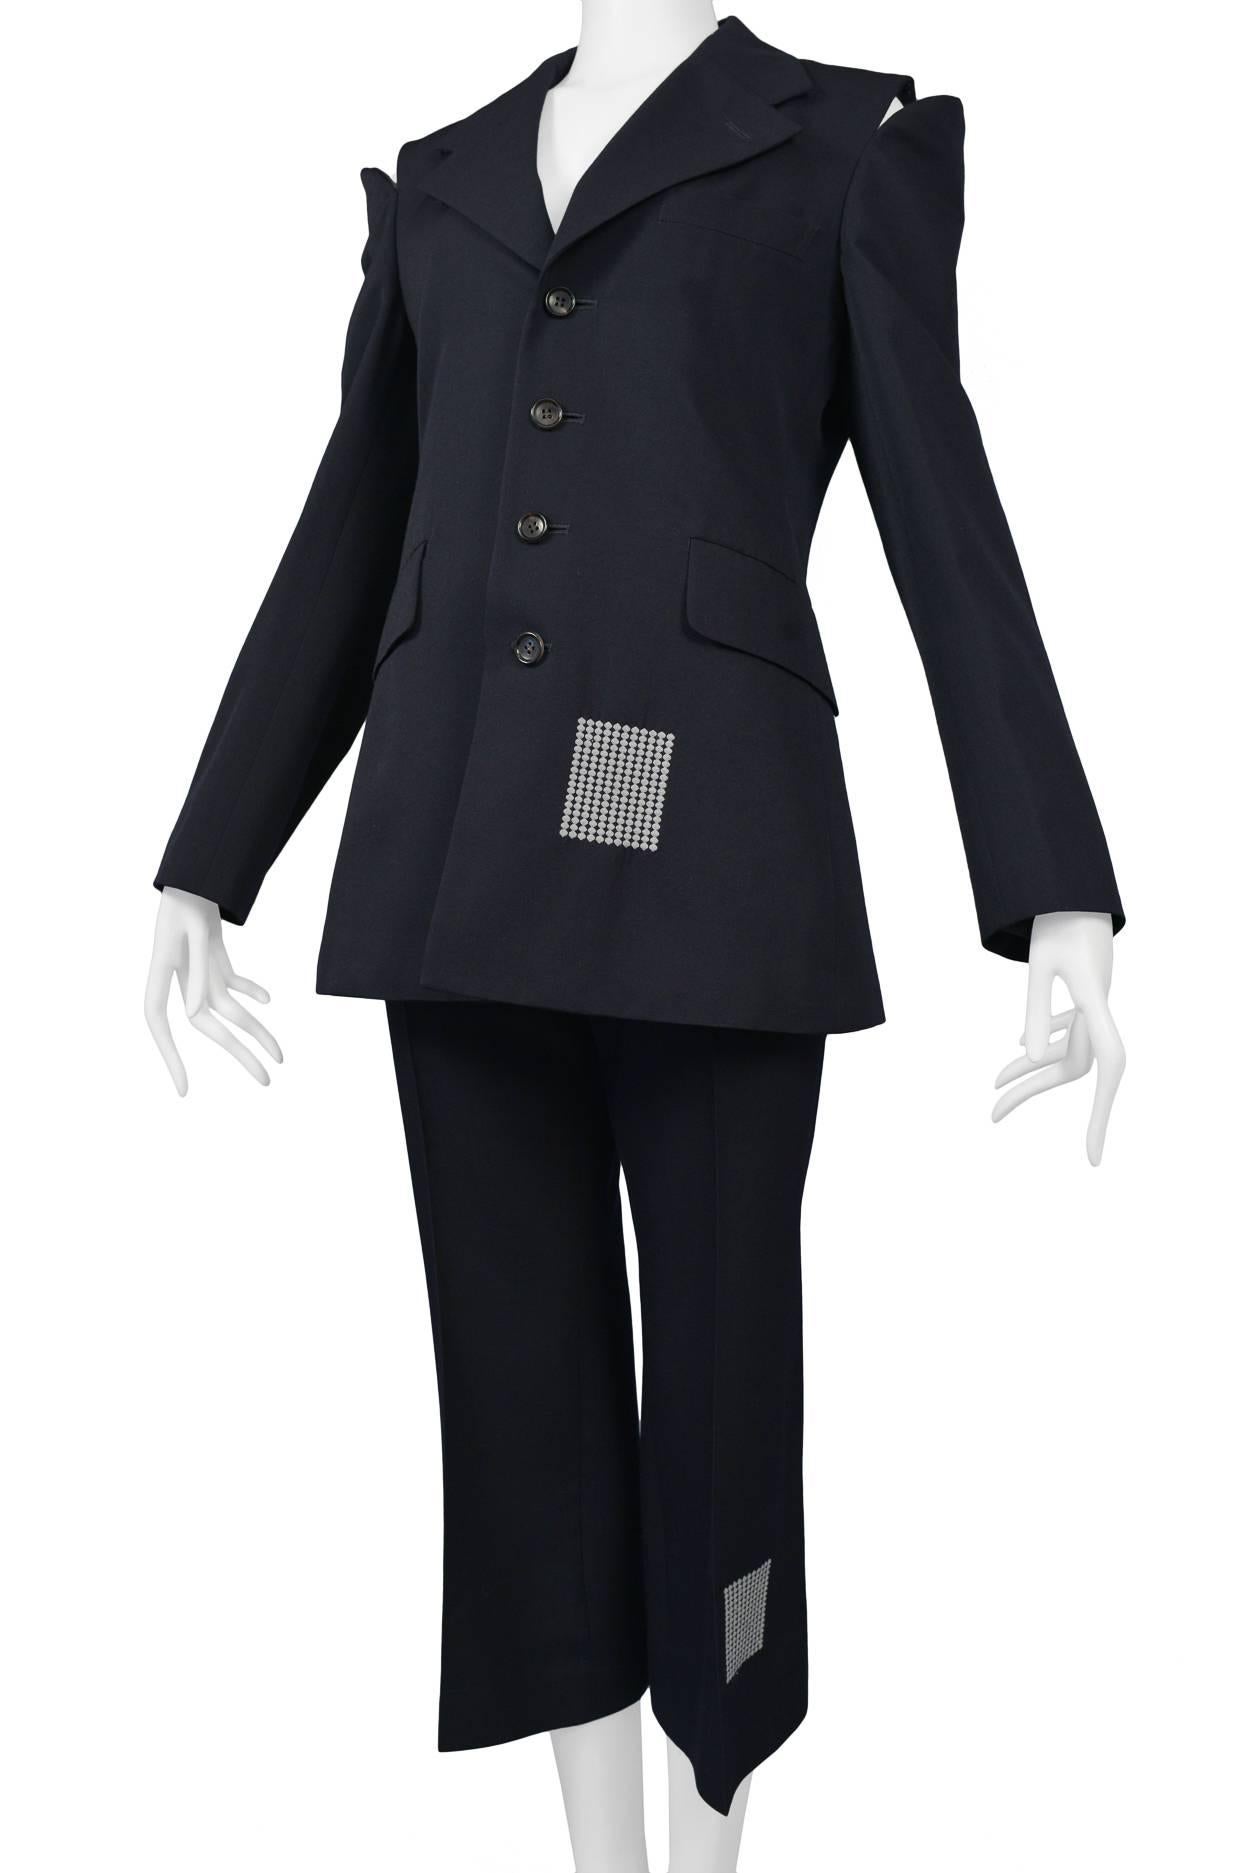 Black Comme des Garcons Navy Blue Suit 2000